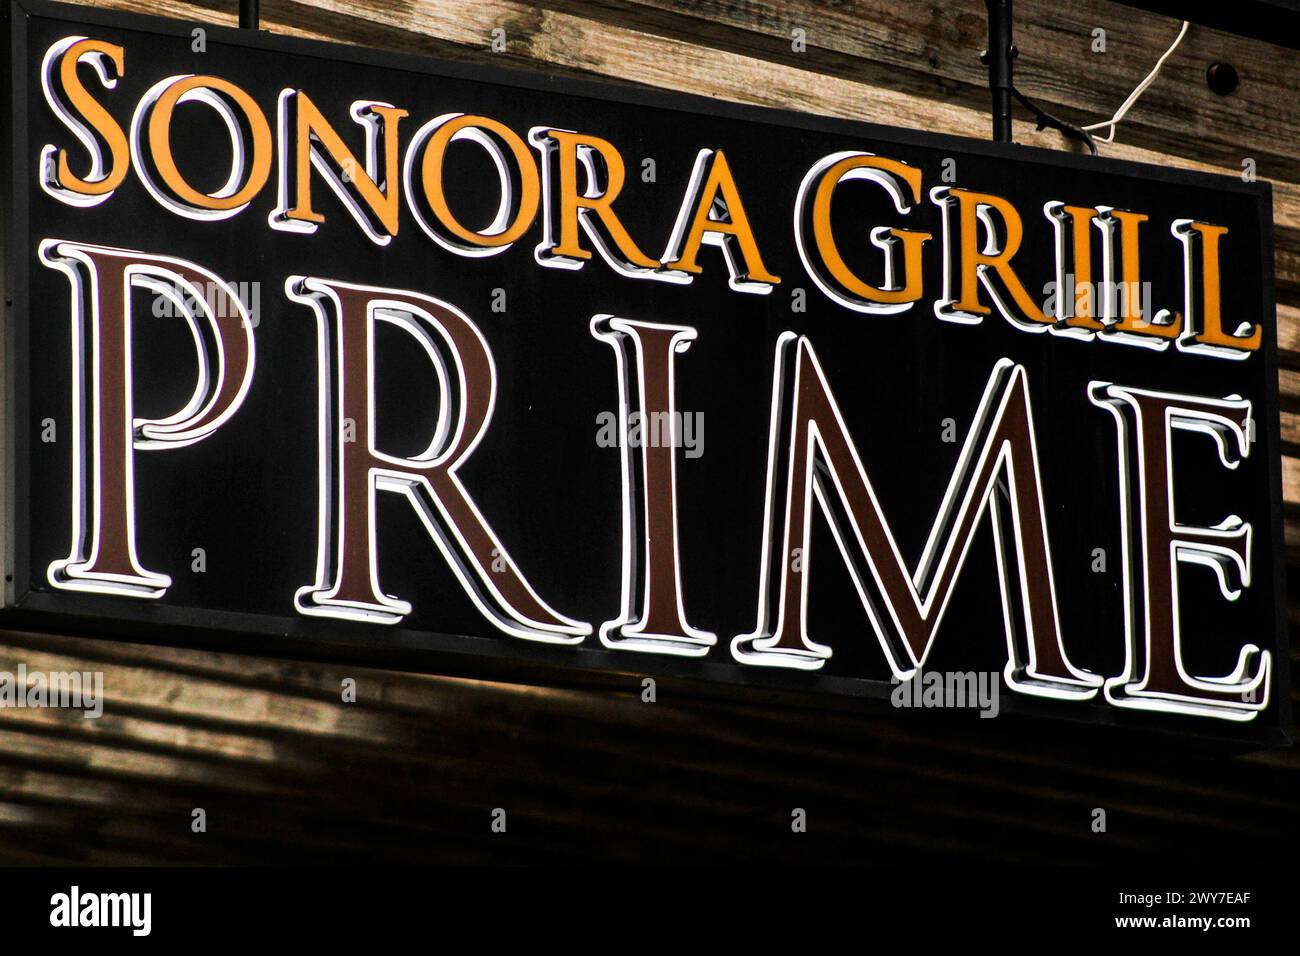 Sonora Grill Prime Stock Photo